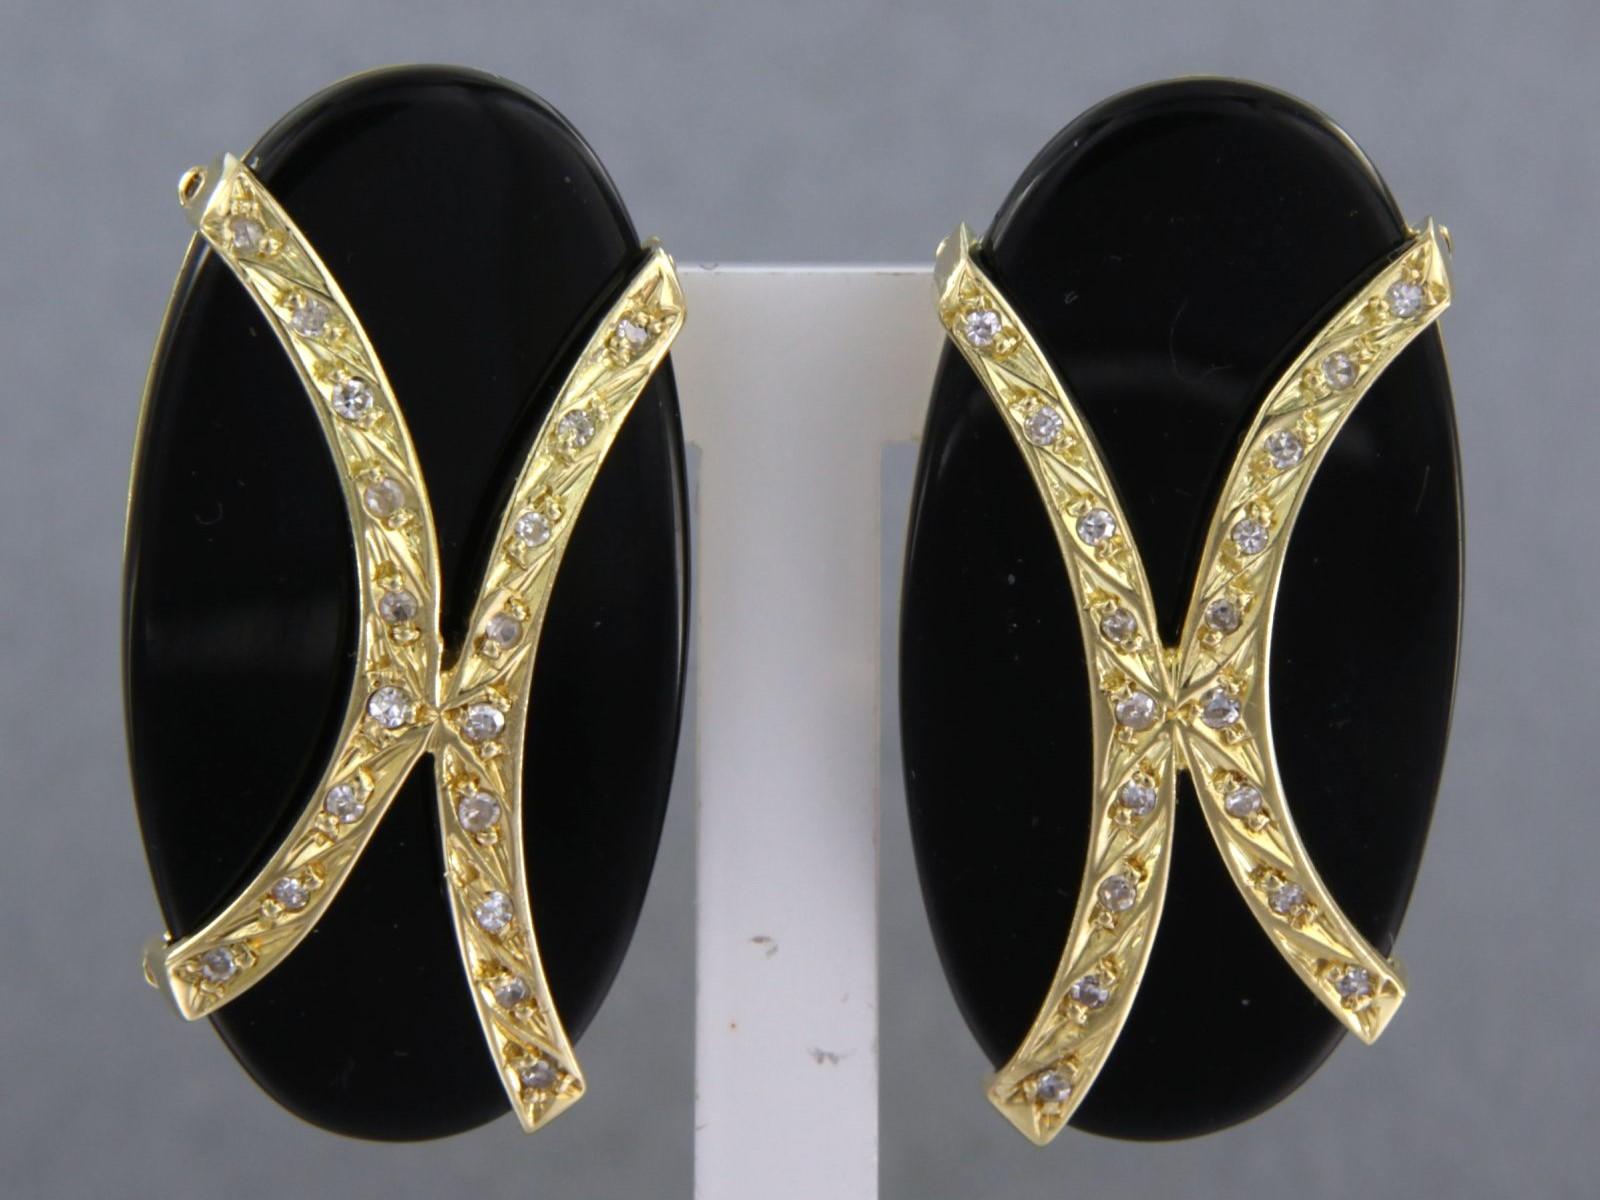 Ohrringe aus 18 kt Gelbgold, besetzt mit Onyx und Diamant im Einzelschliff 0,10 ct - F/G - VS/SI

ausführliche Beschreibung

Die Ohrringe sind 3,0 cm hoch und 1,5 cm breit

Gewicht: 15,4 Gramm

beschäftigt mit:

- 2 x 3,0 cm - 1,5 cm ovaler Onyx im